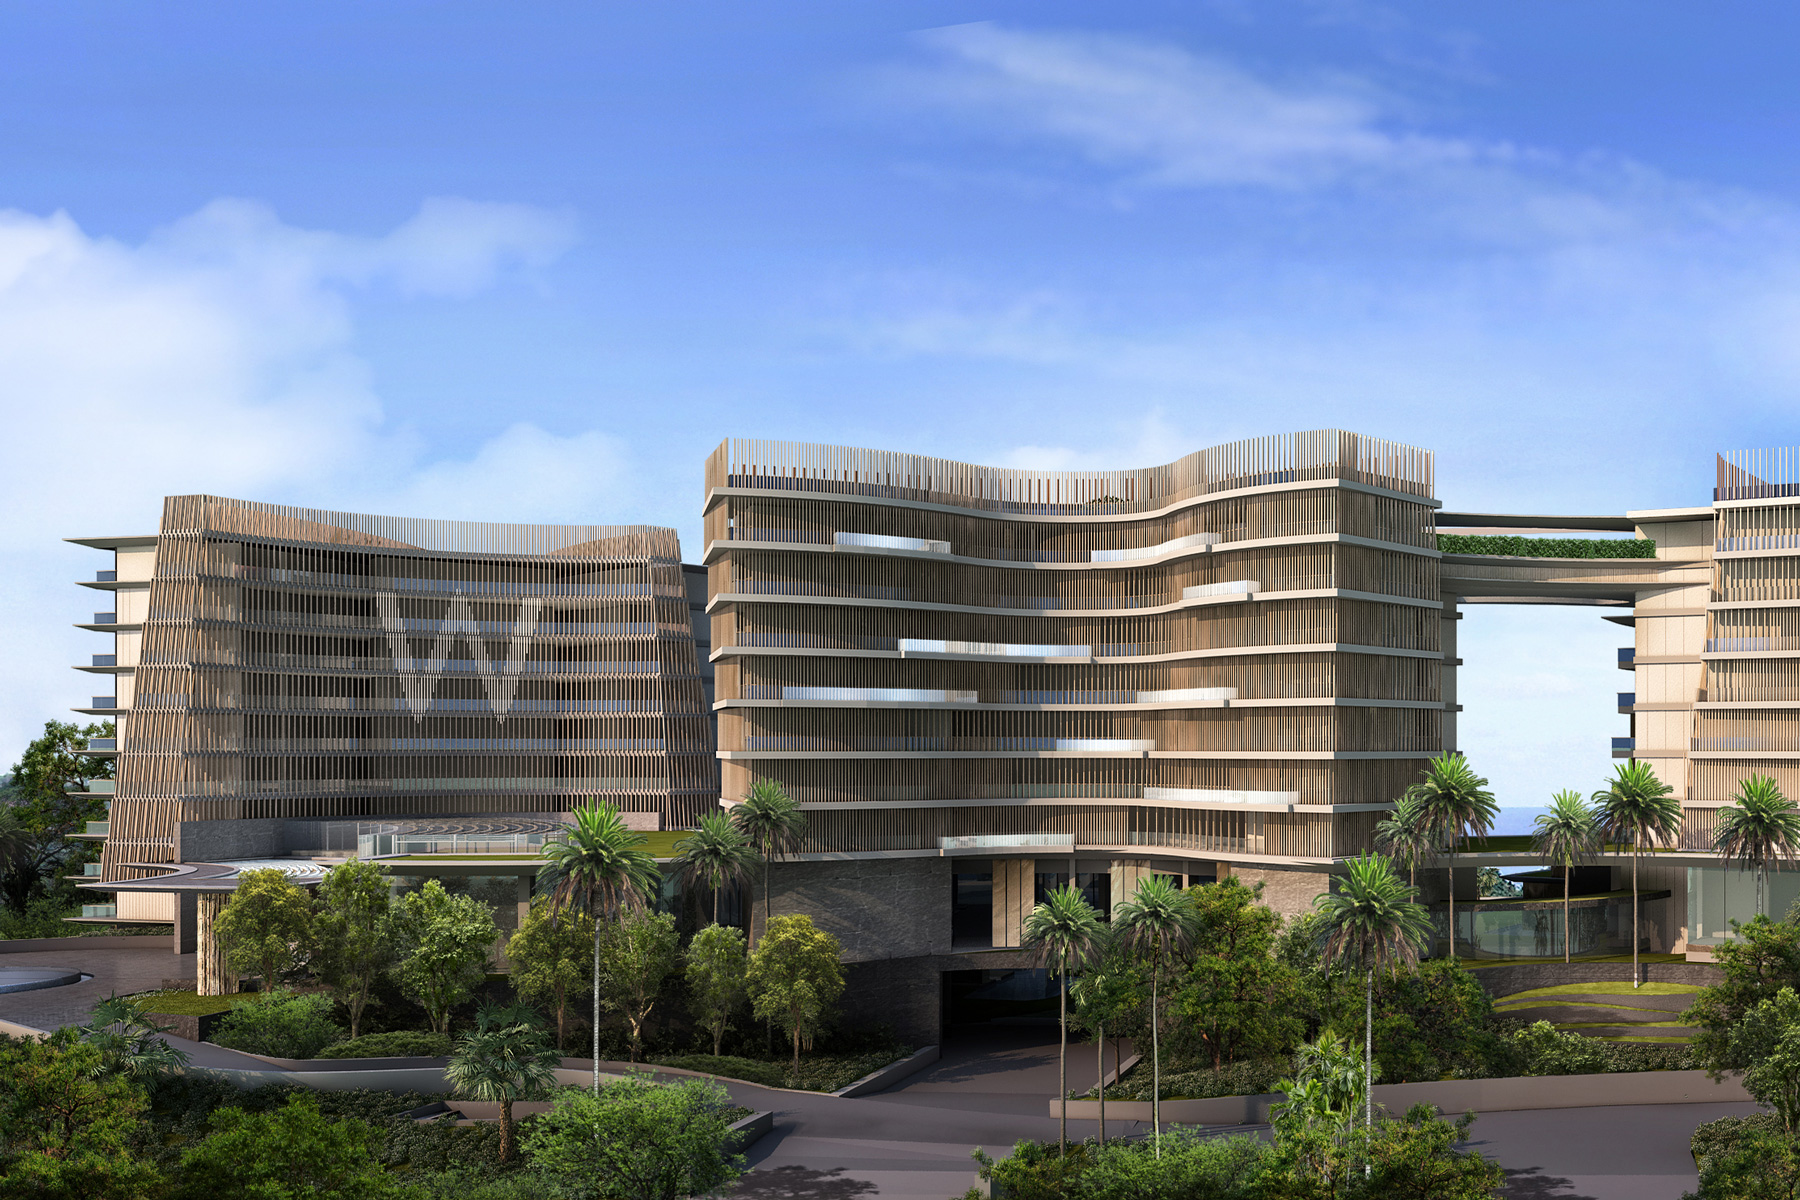 North view design of luxury resort shenzhen building